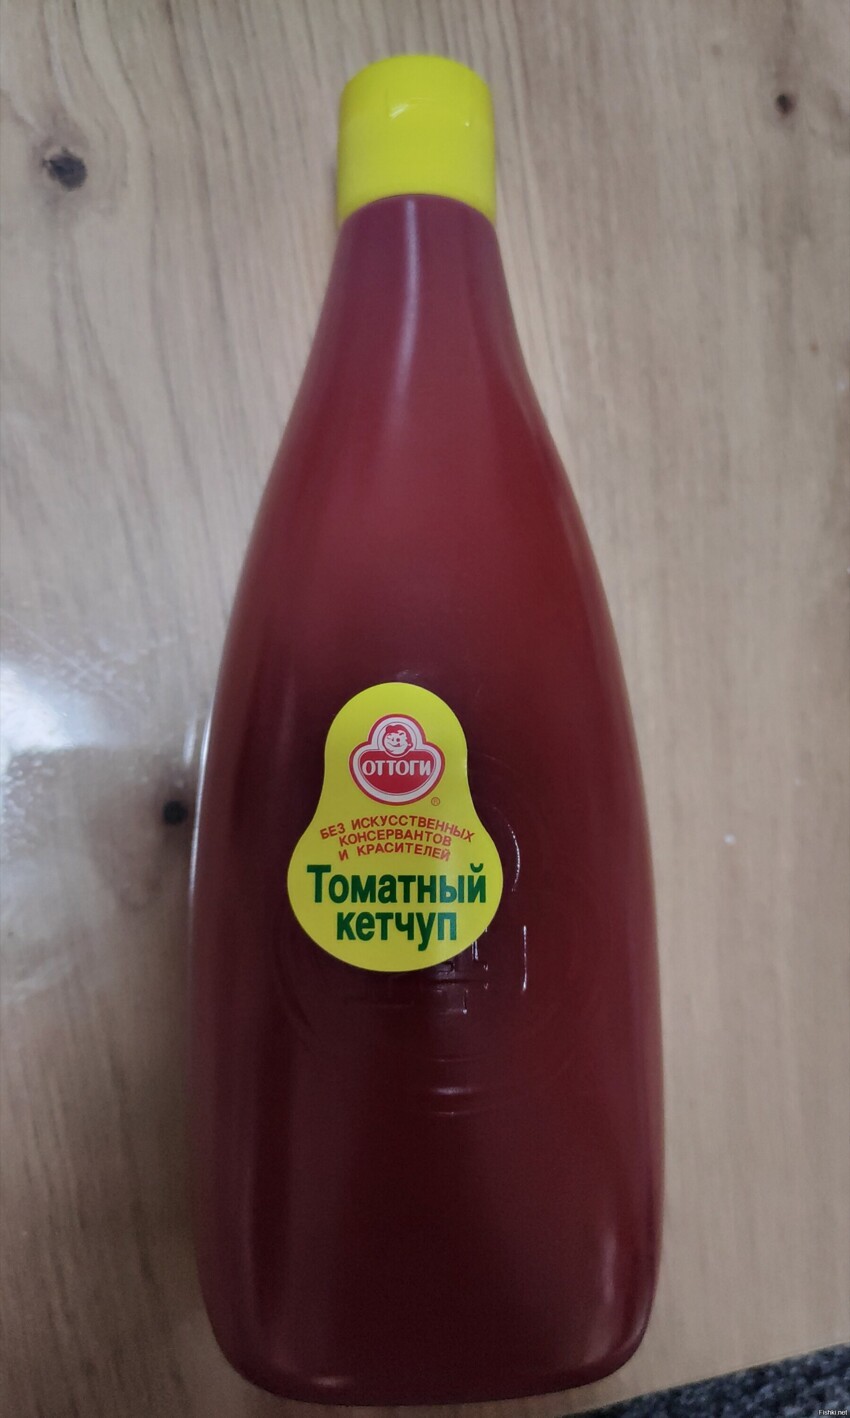 Действительно вкусный кетчуп как болгарский был в СССР